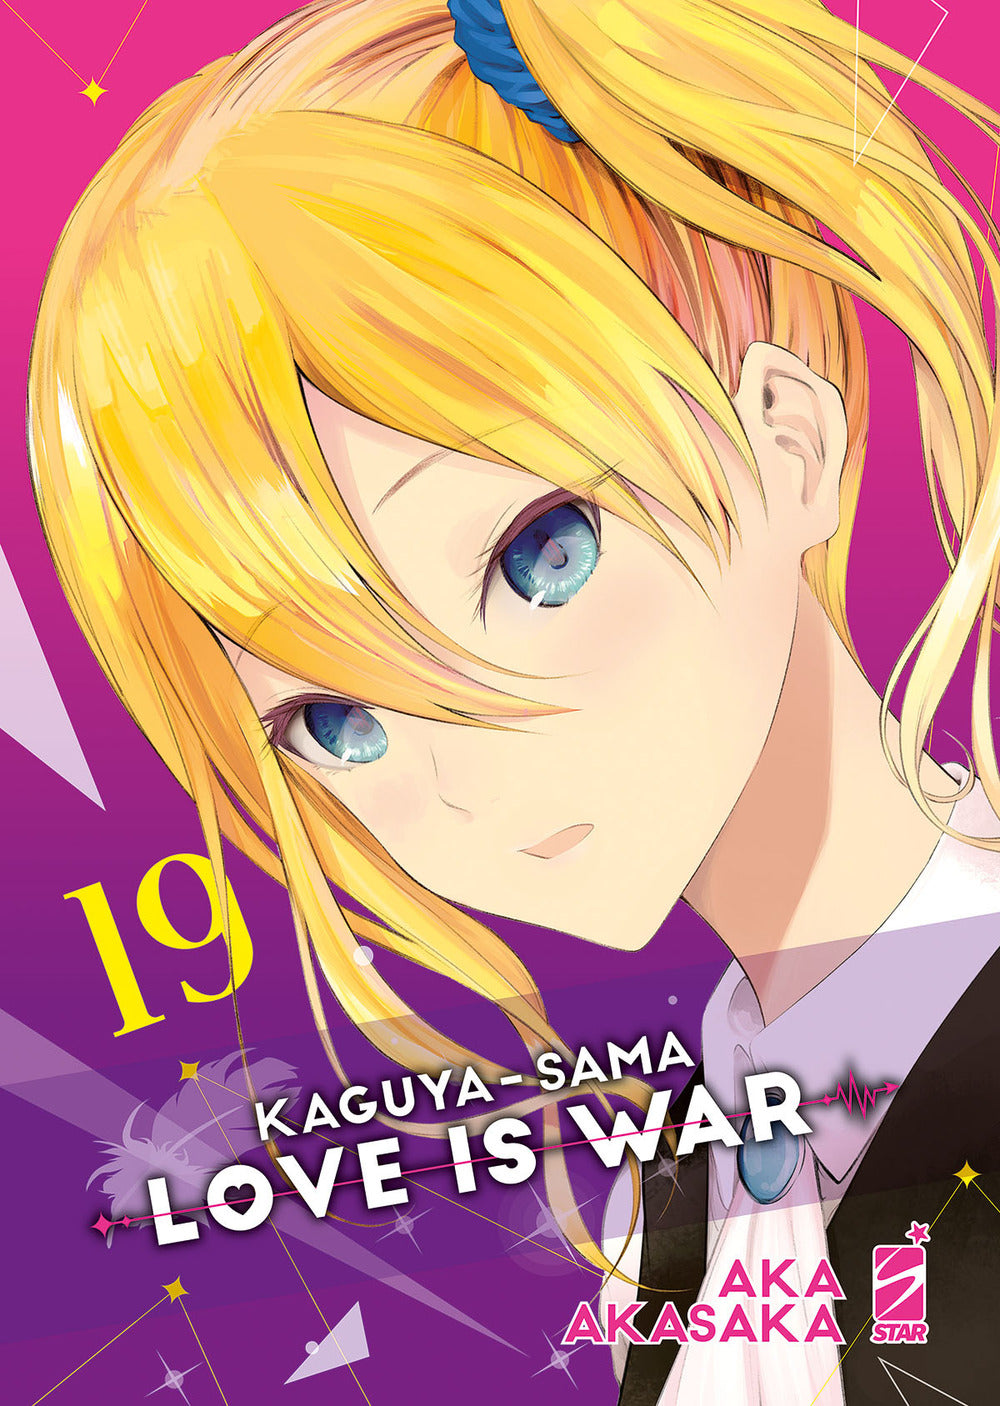 Kaguya-sama. Love is war. Vol. 19